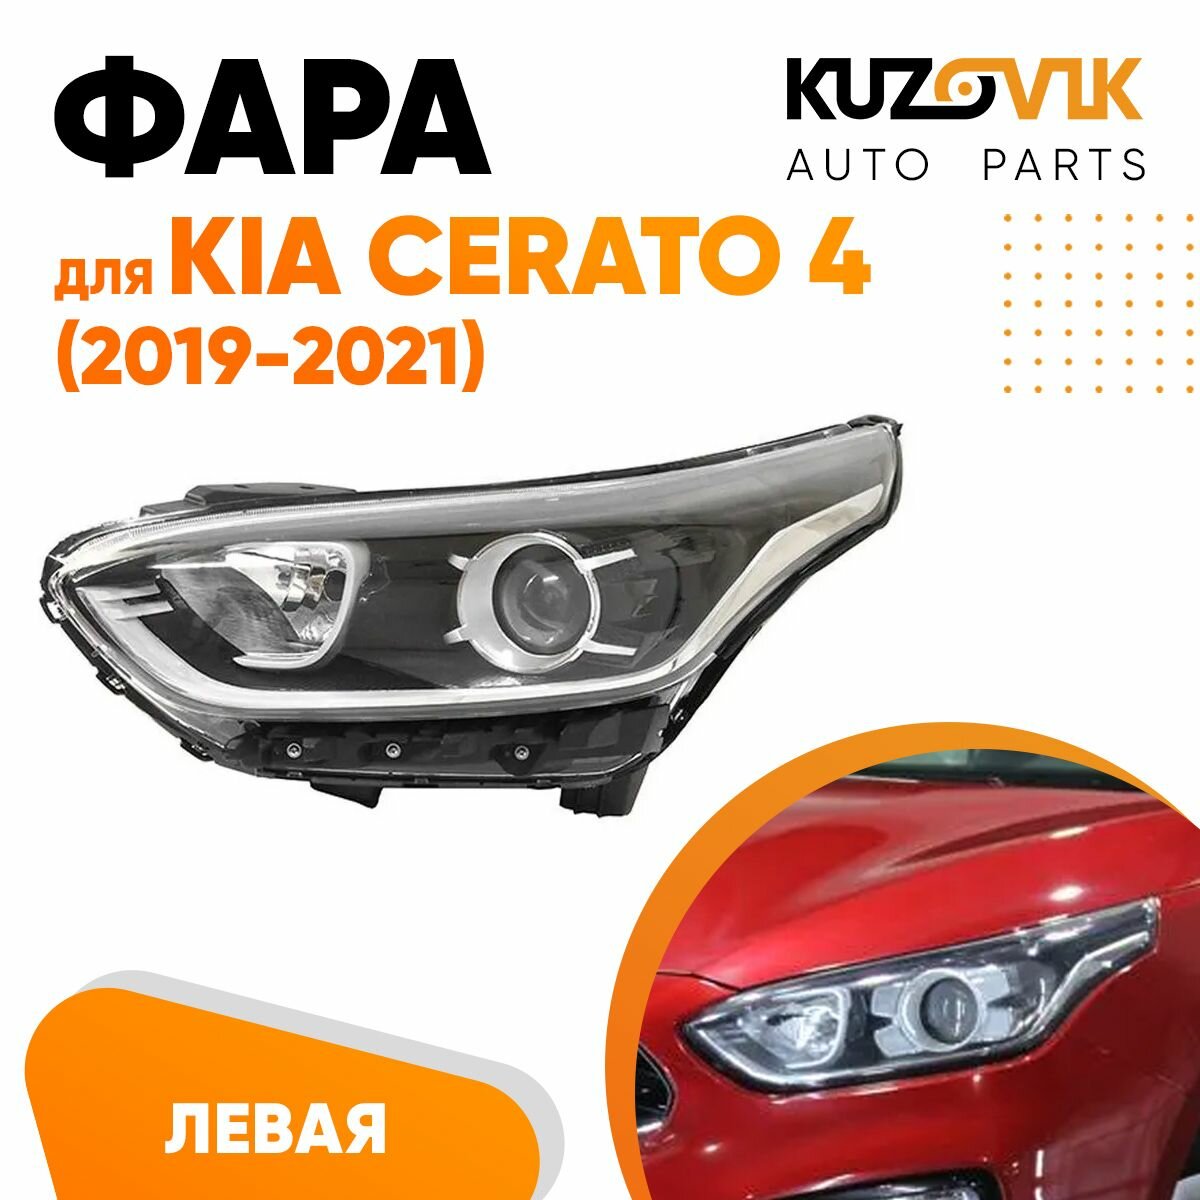 Фара для Киа Церато Kia Cerato 4 (2019-2021) галогеновая под корректор левая